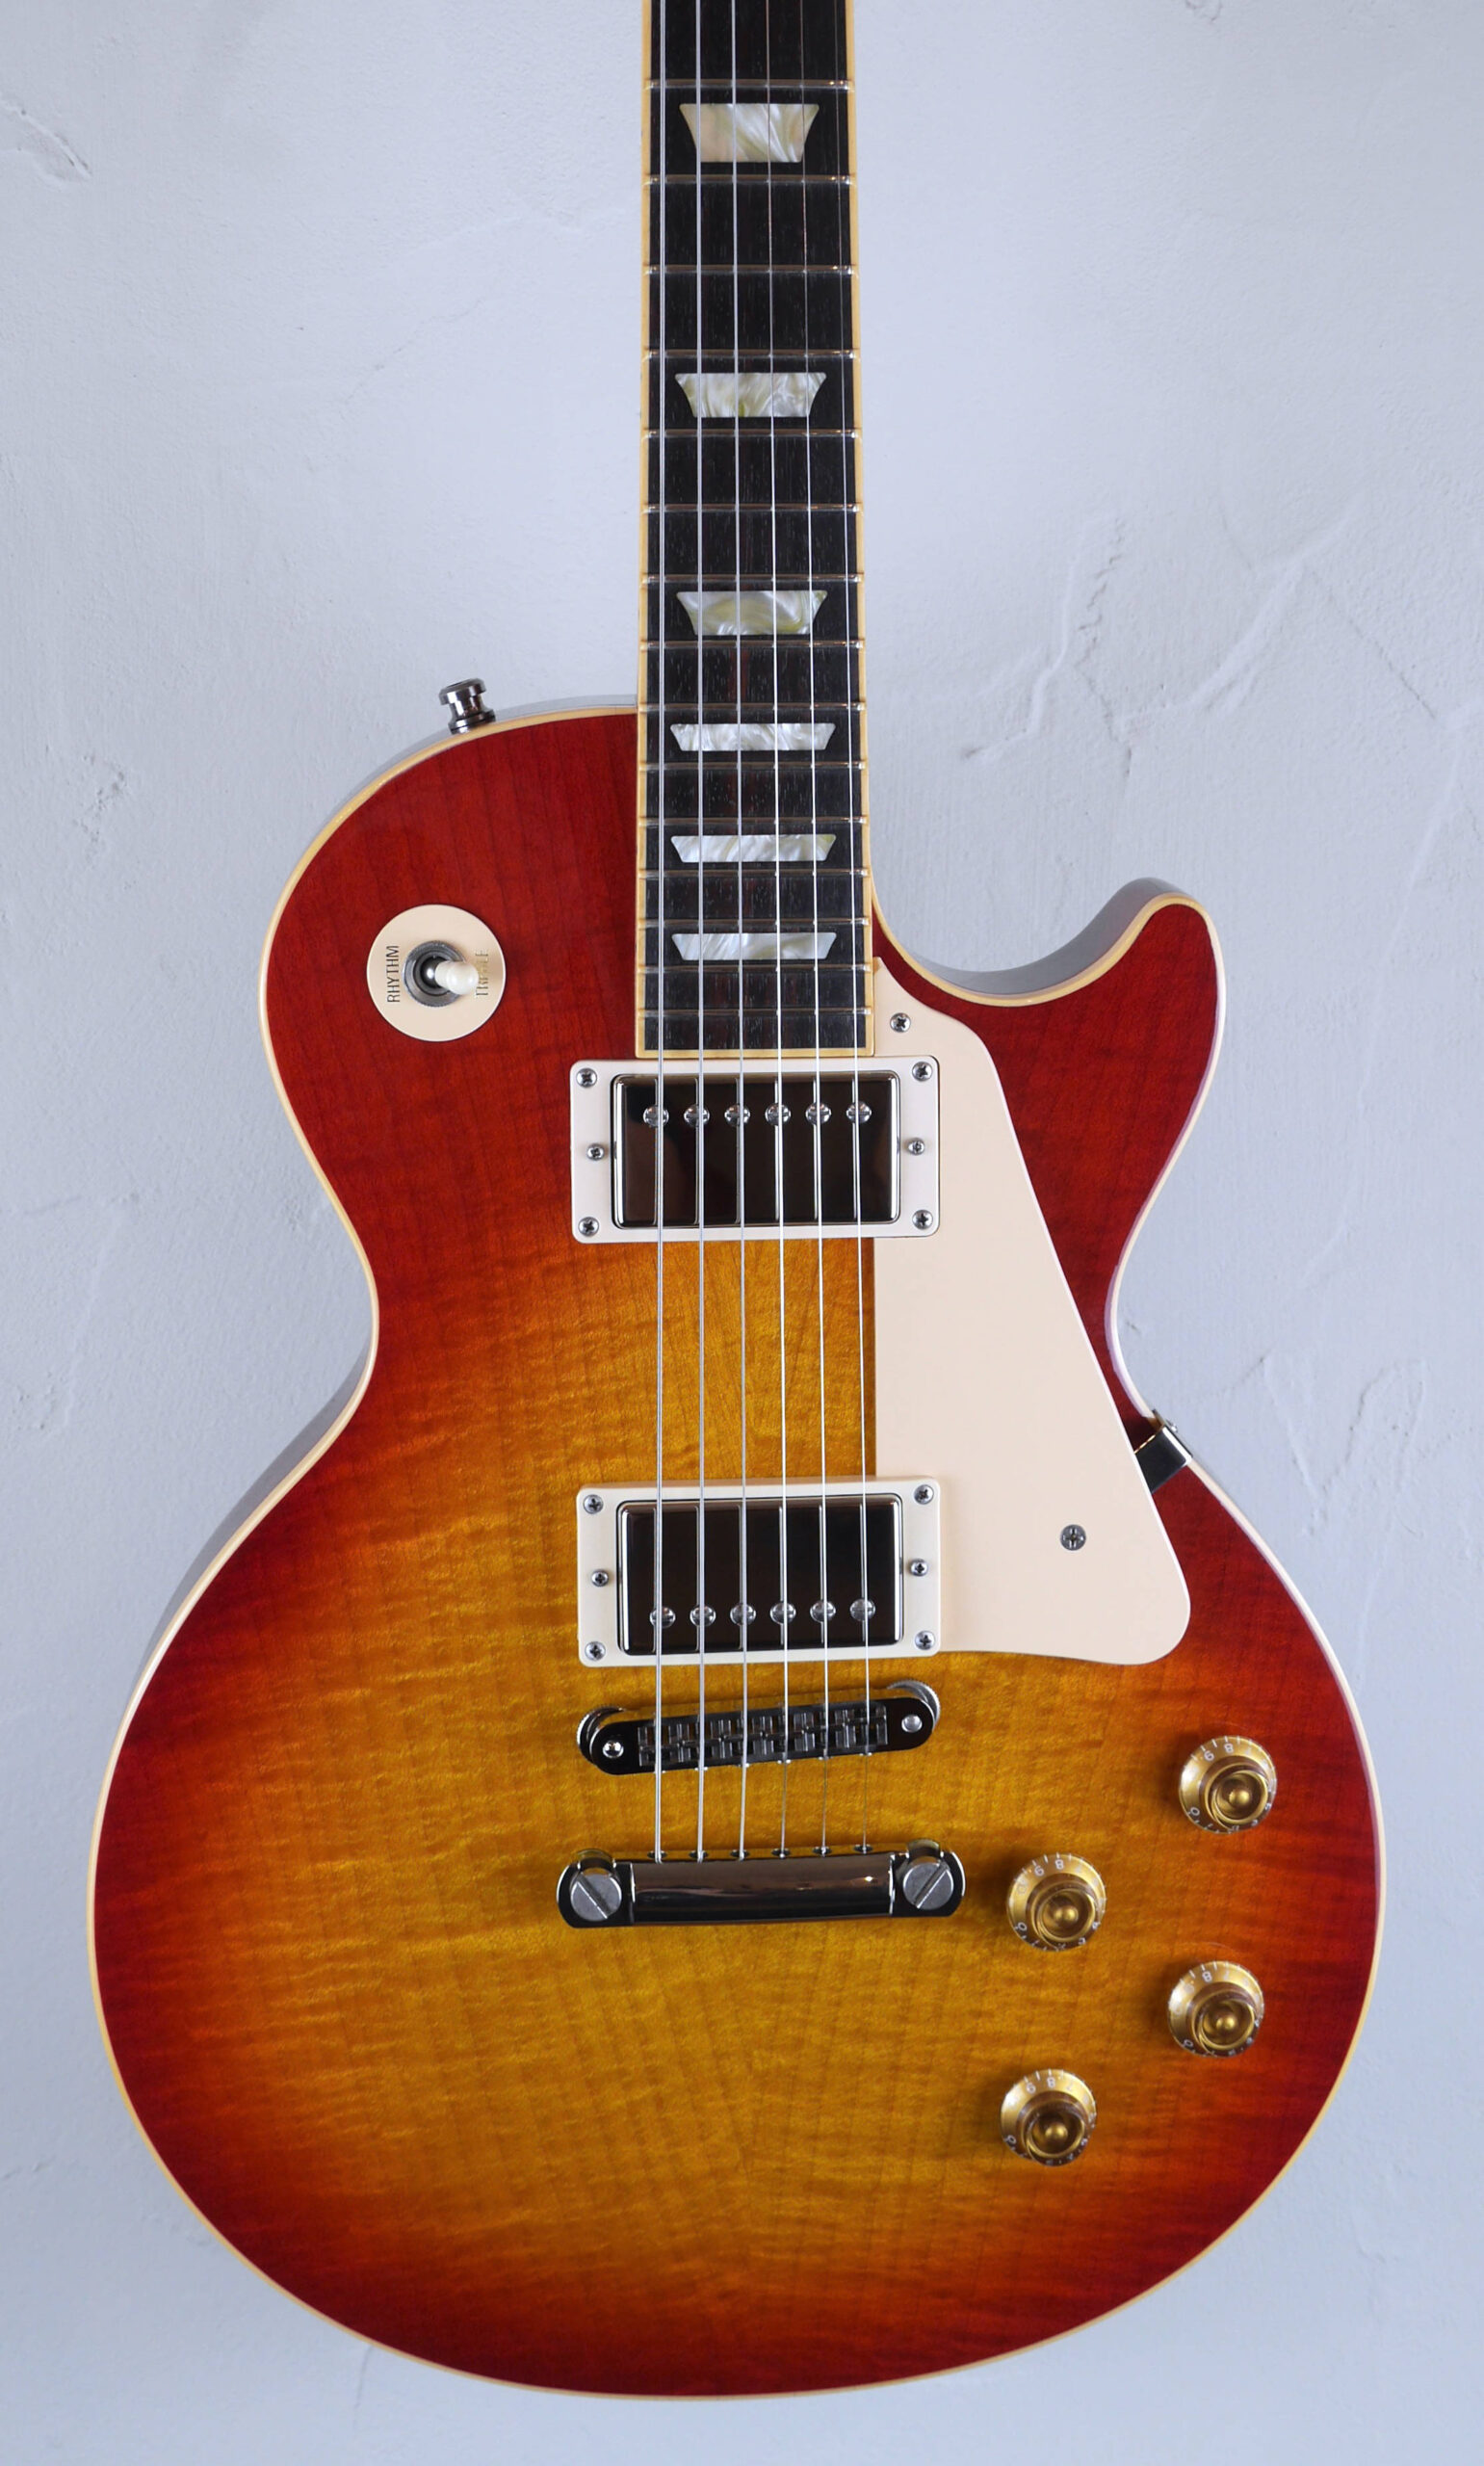 Gibson Les Paul Standard Premium Plus 29/08/2006 Heritage Cherry Sunburst 4